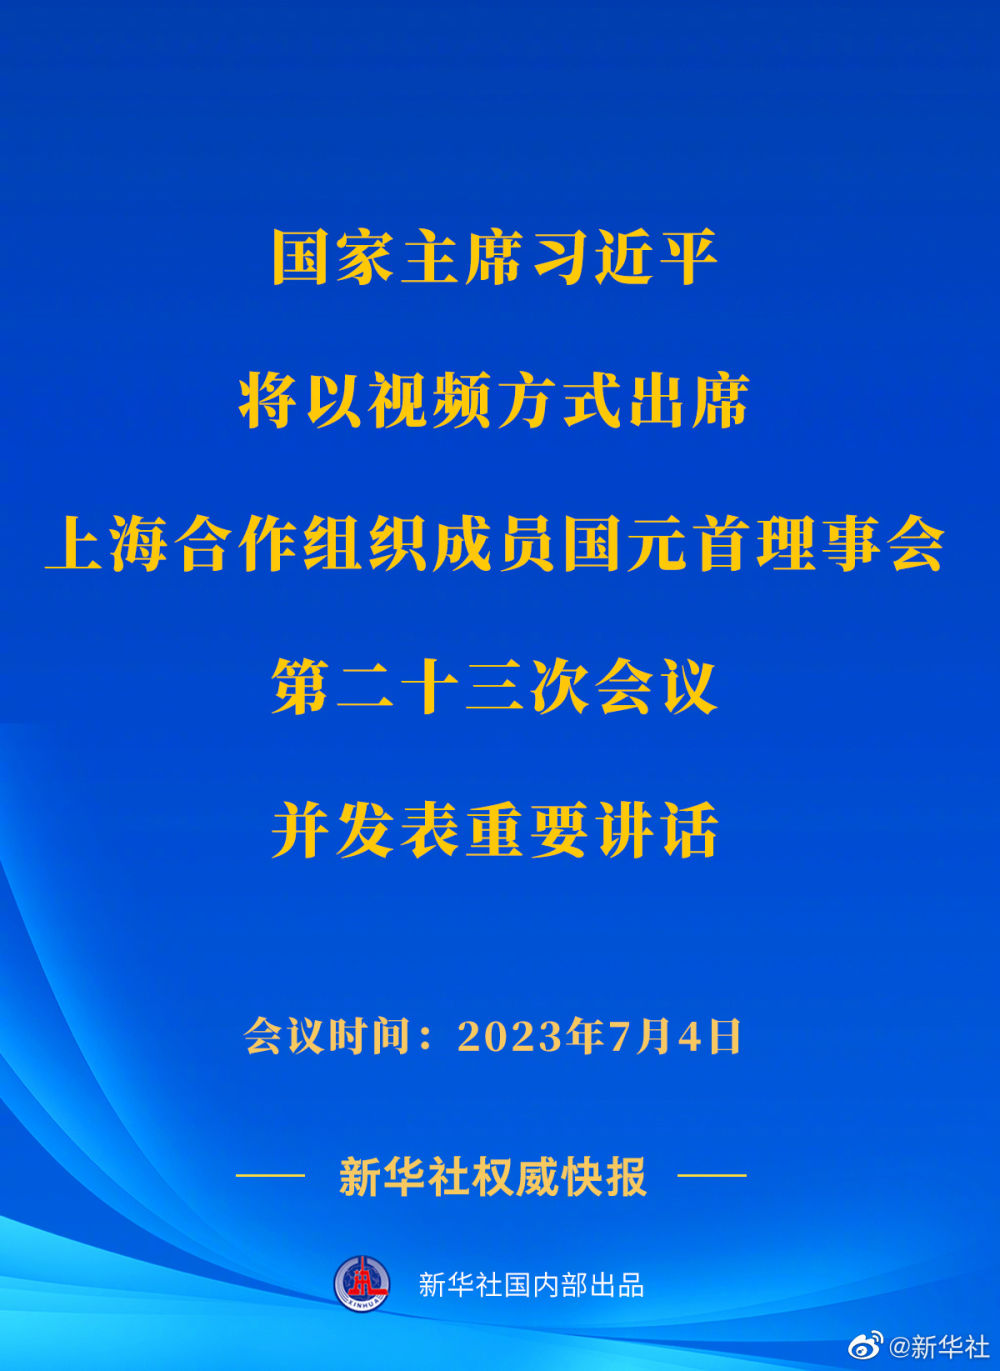 习近平将出席上海合作组织成员国元首理事会第二十三次会议